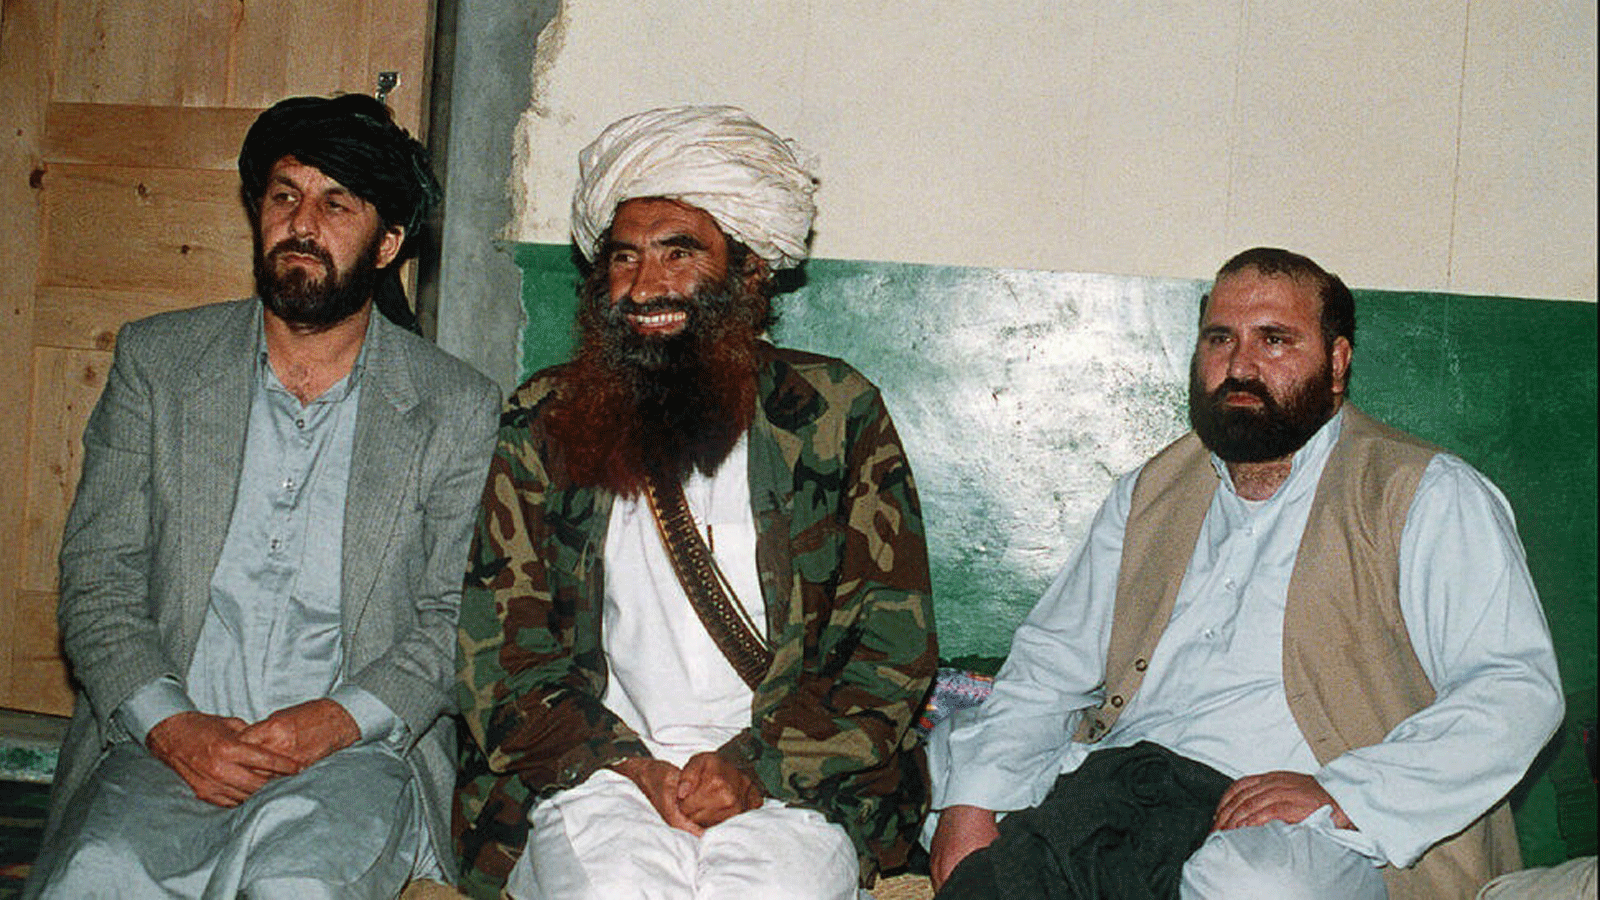 صورة التُقِطَت في 2 نيسان/ أبريل 1991 للقائد الأفغاني جلال الدين حقاني (في الوسط) مع اثنين من كبار قادة حرب العصابات أمين وردك وعبد الحق في قاعدته الباكستانية في ميرانشاه